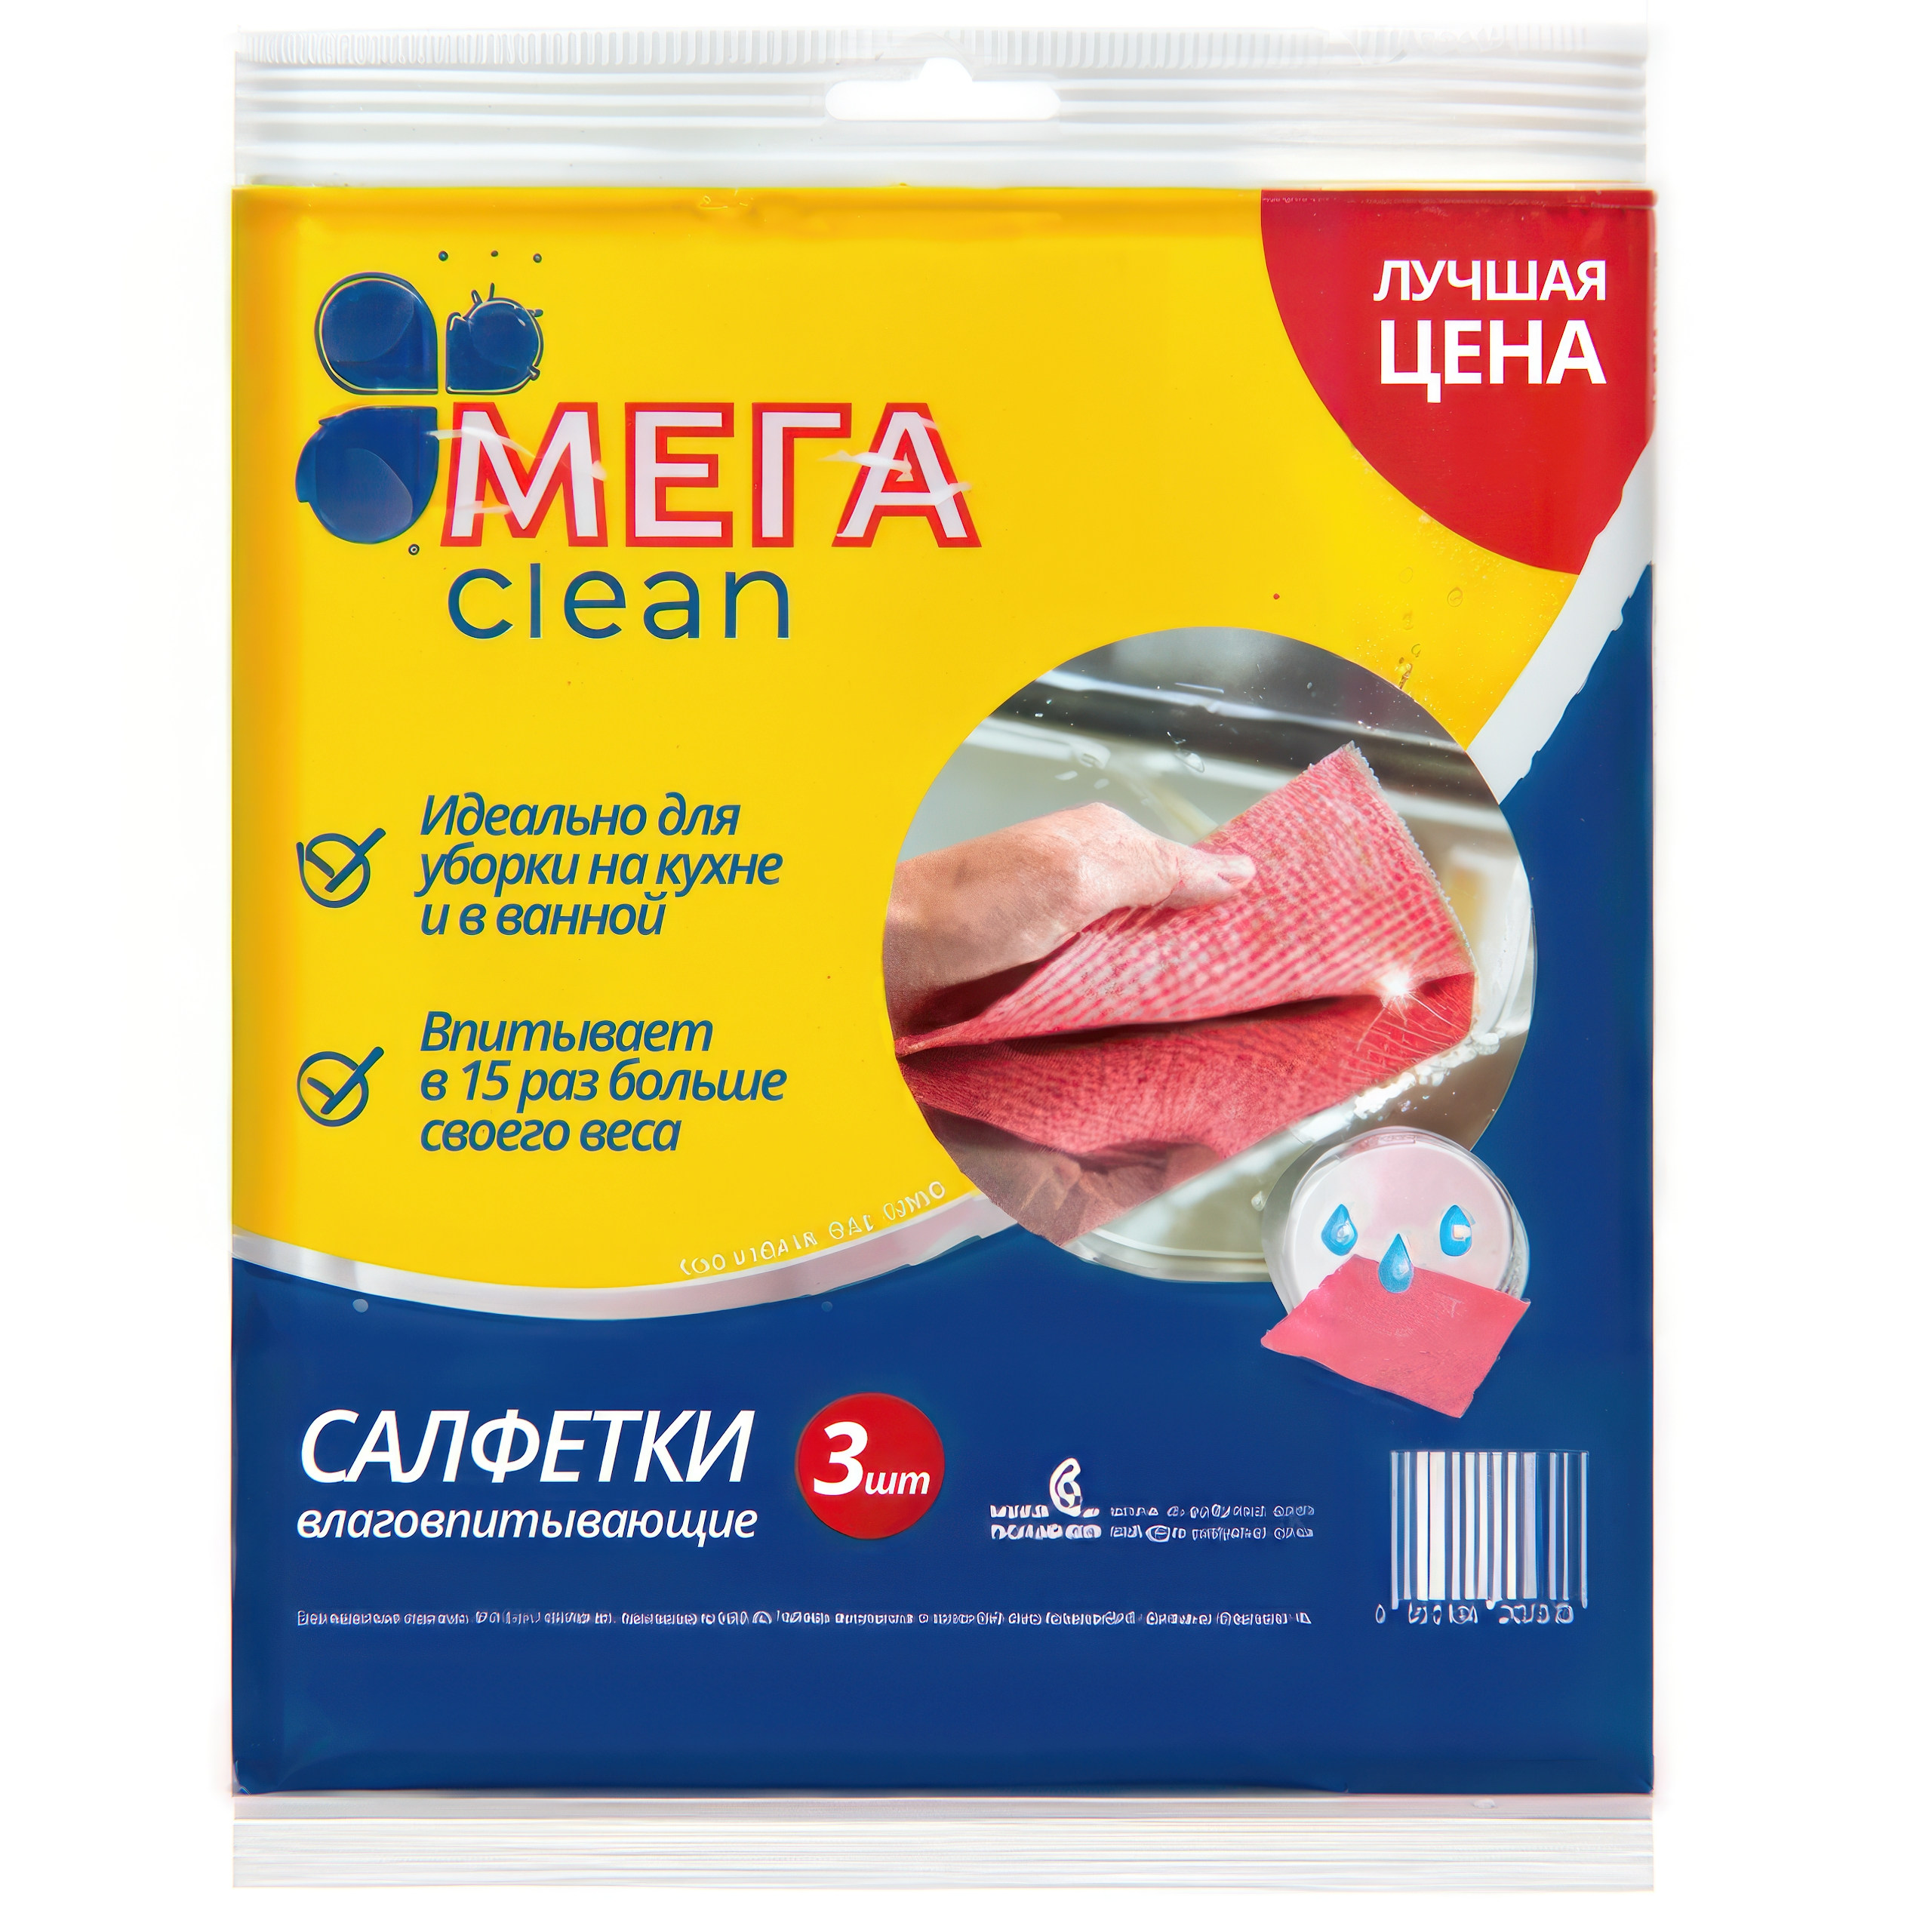 Купить Салфетки влаговпитывающие Мега Clean 3 шт, ТМ «МЕГА CLEAN» оптом, в наличии и на заказ